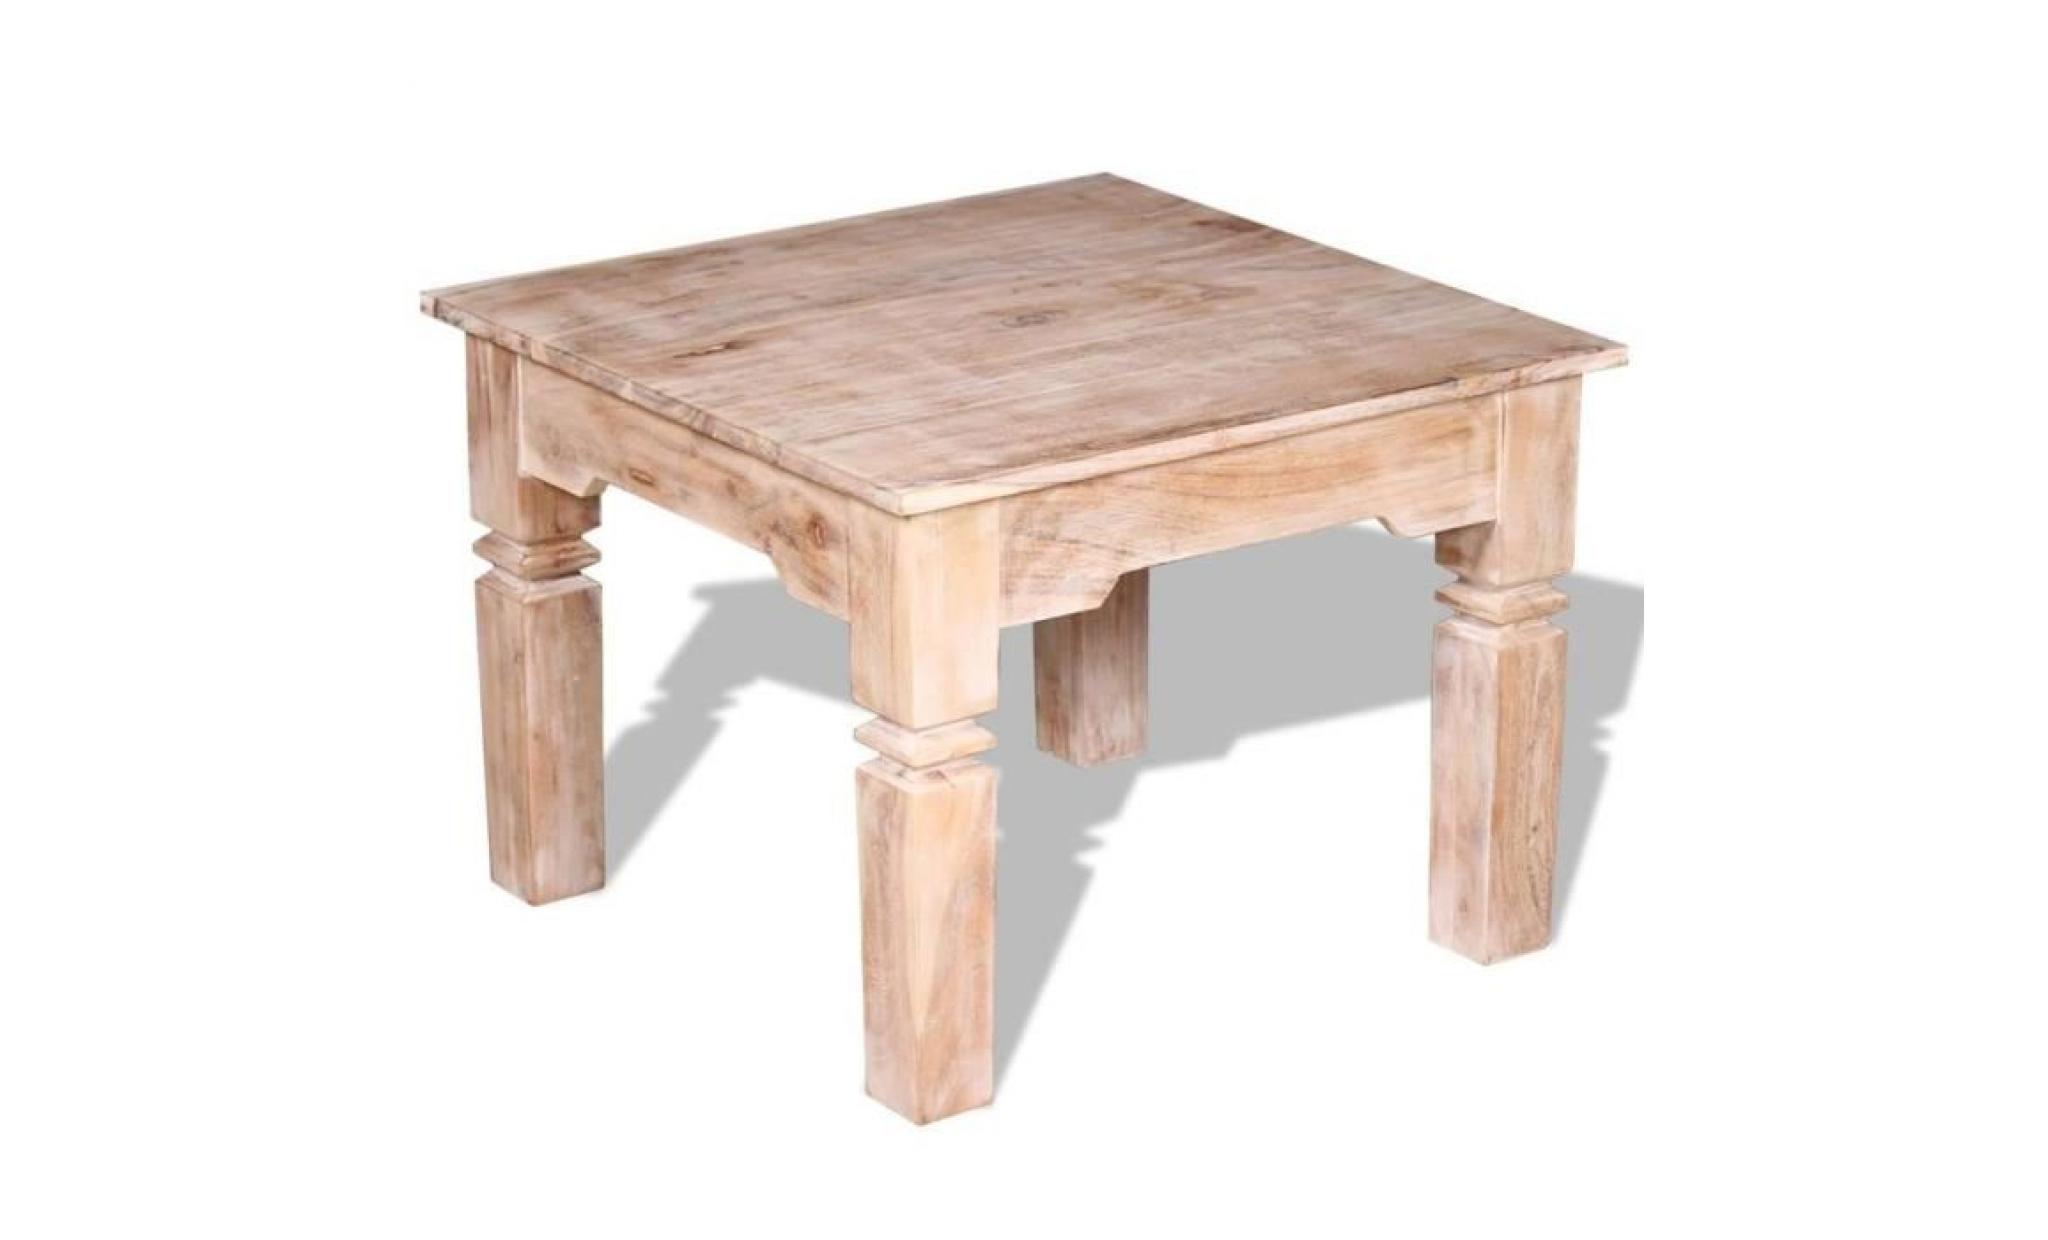 r194 cette table basse en bois d'acacia sera un accessoire indemodable a votre decor interieur. les differences dans le